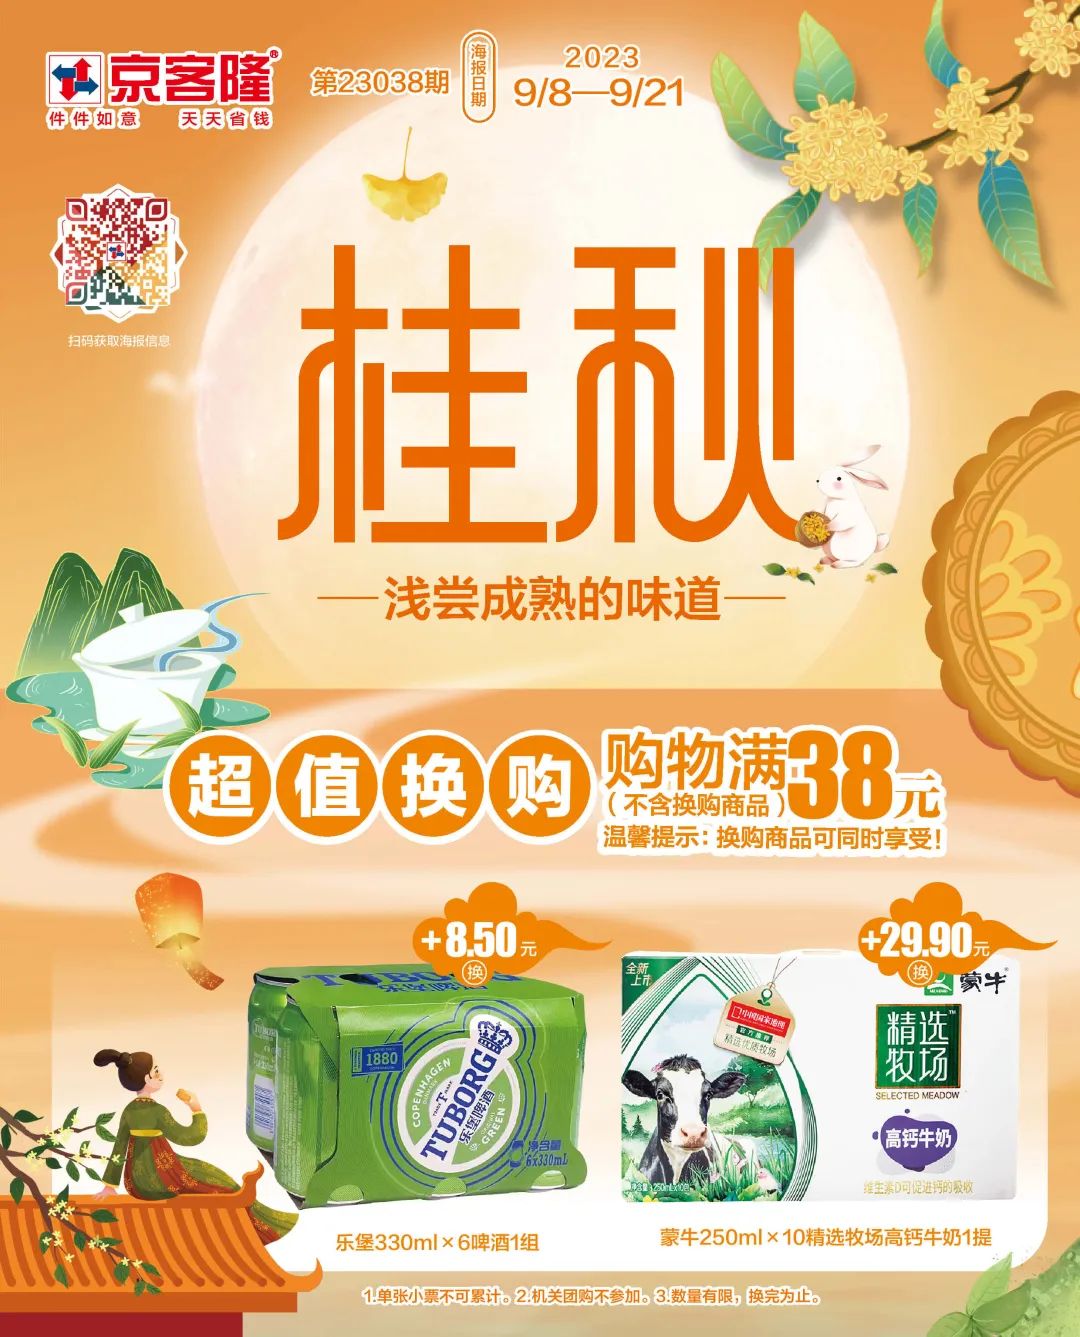 北京京客隆超市促销海报（第23038期）